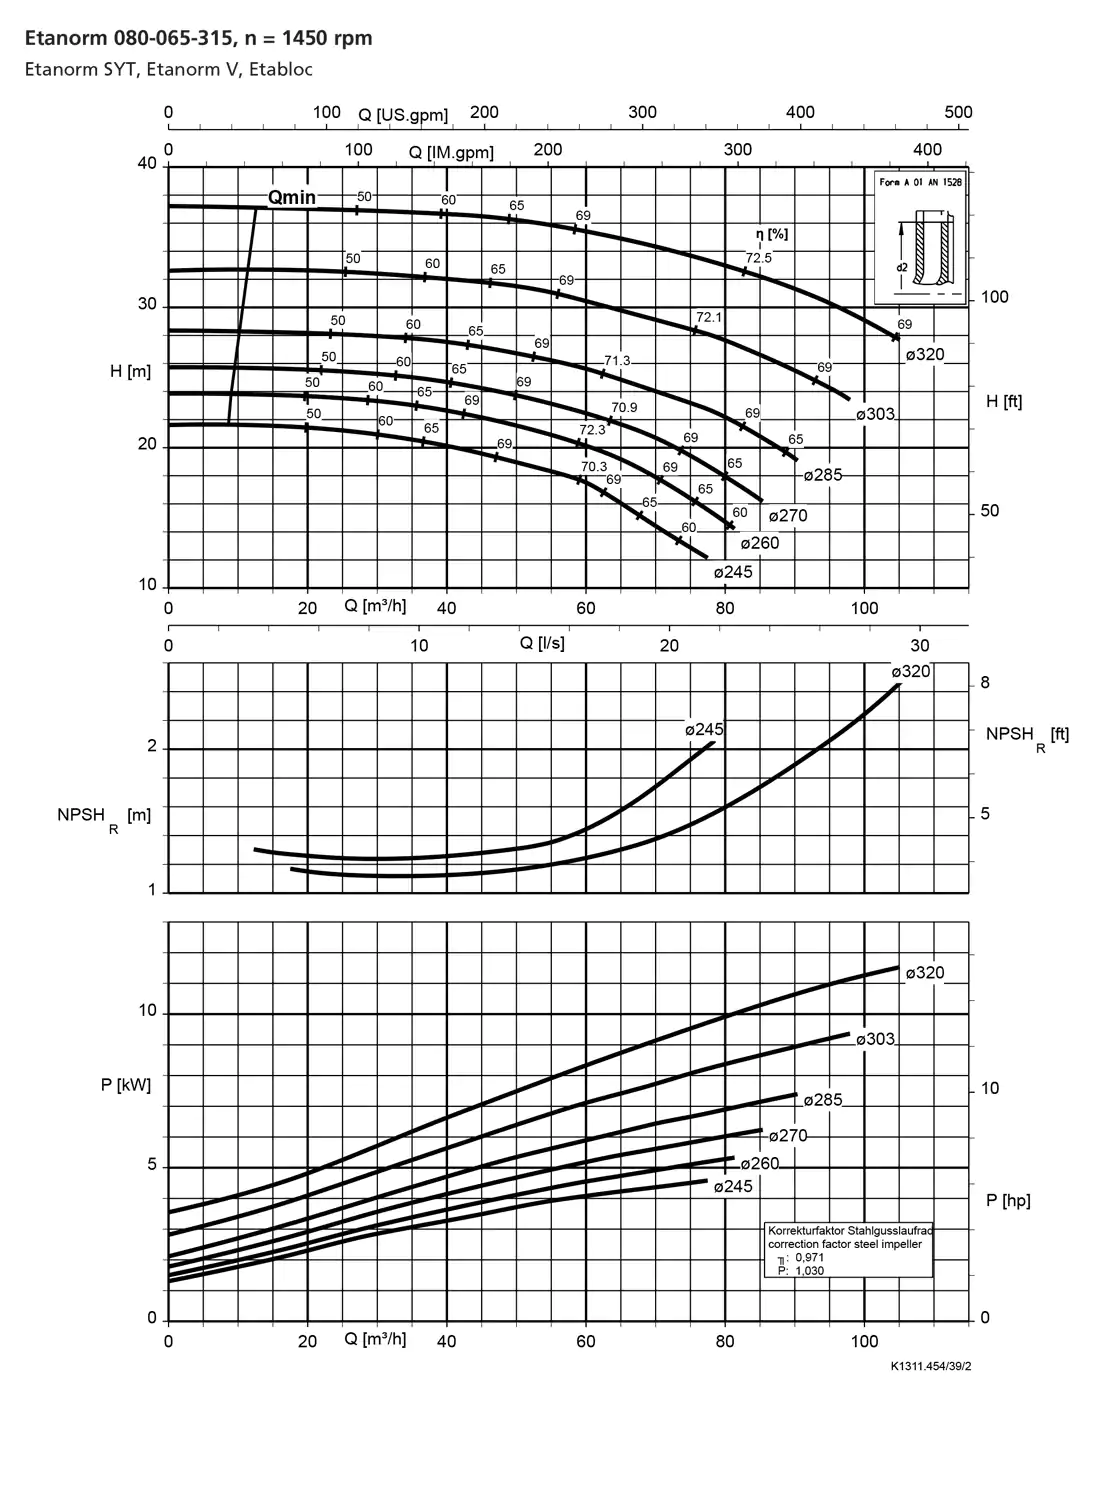 نمودار-کارکرد-پمپ-etanorm-syt-80-065-315-1450